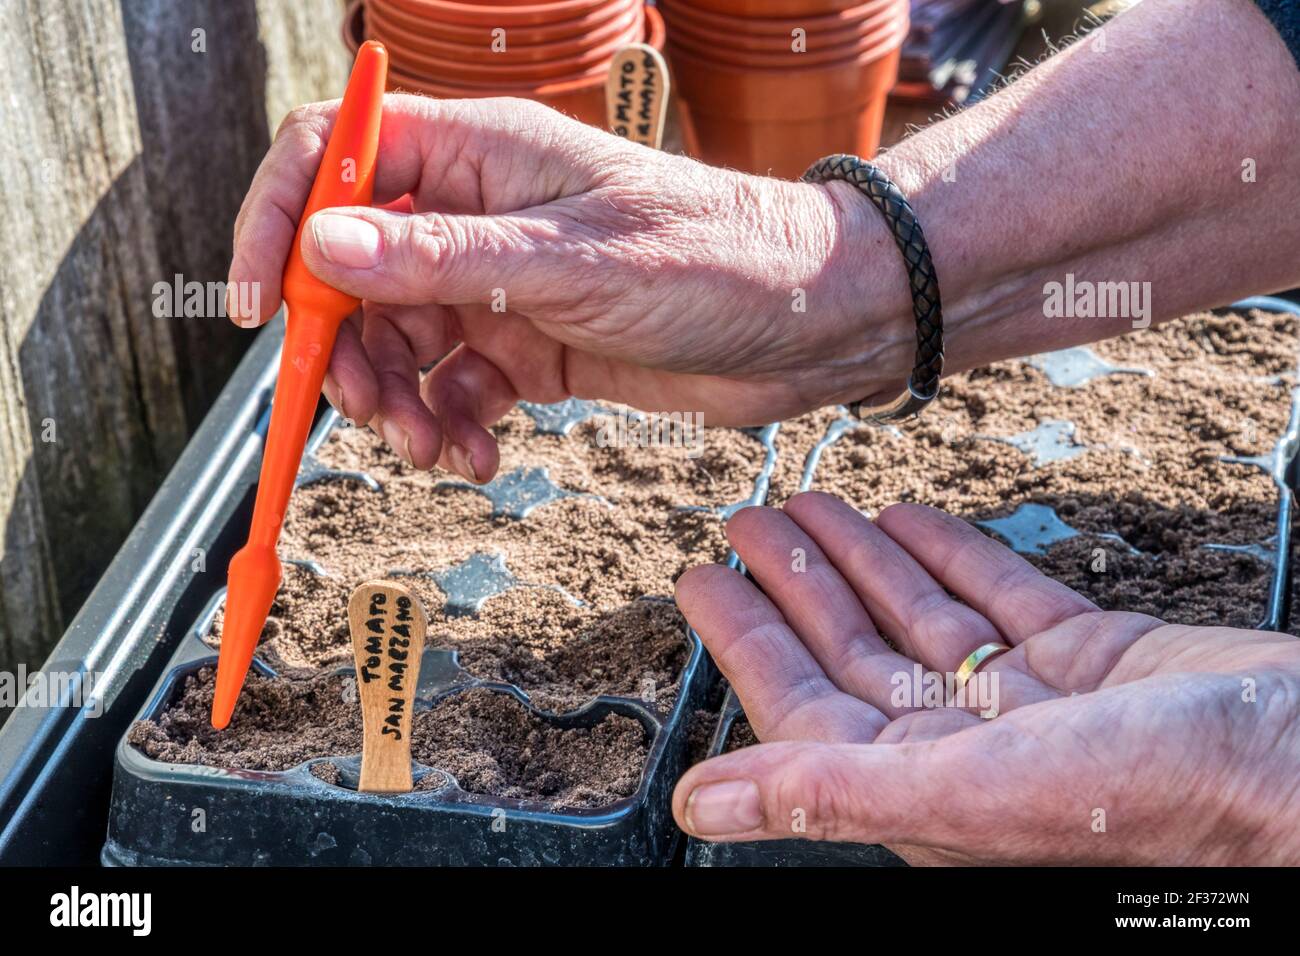 Frau, die Tomatensamen aus San Marzano, Solanum lycopersicum, ausgesät hat, indem sie Kunststoffbehälter aus einem Gartencenter wiederverwendet, um zu vermeiden, dass sie auf Deponien landen. Stockfoto